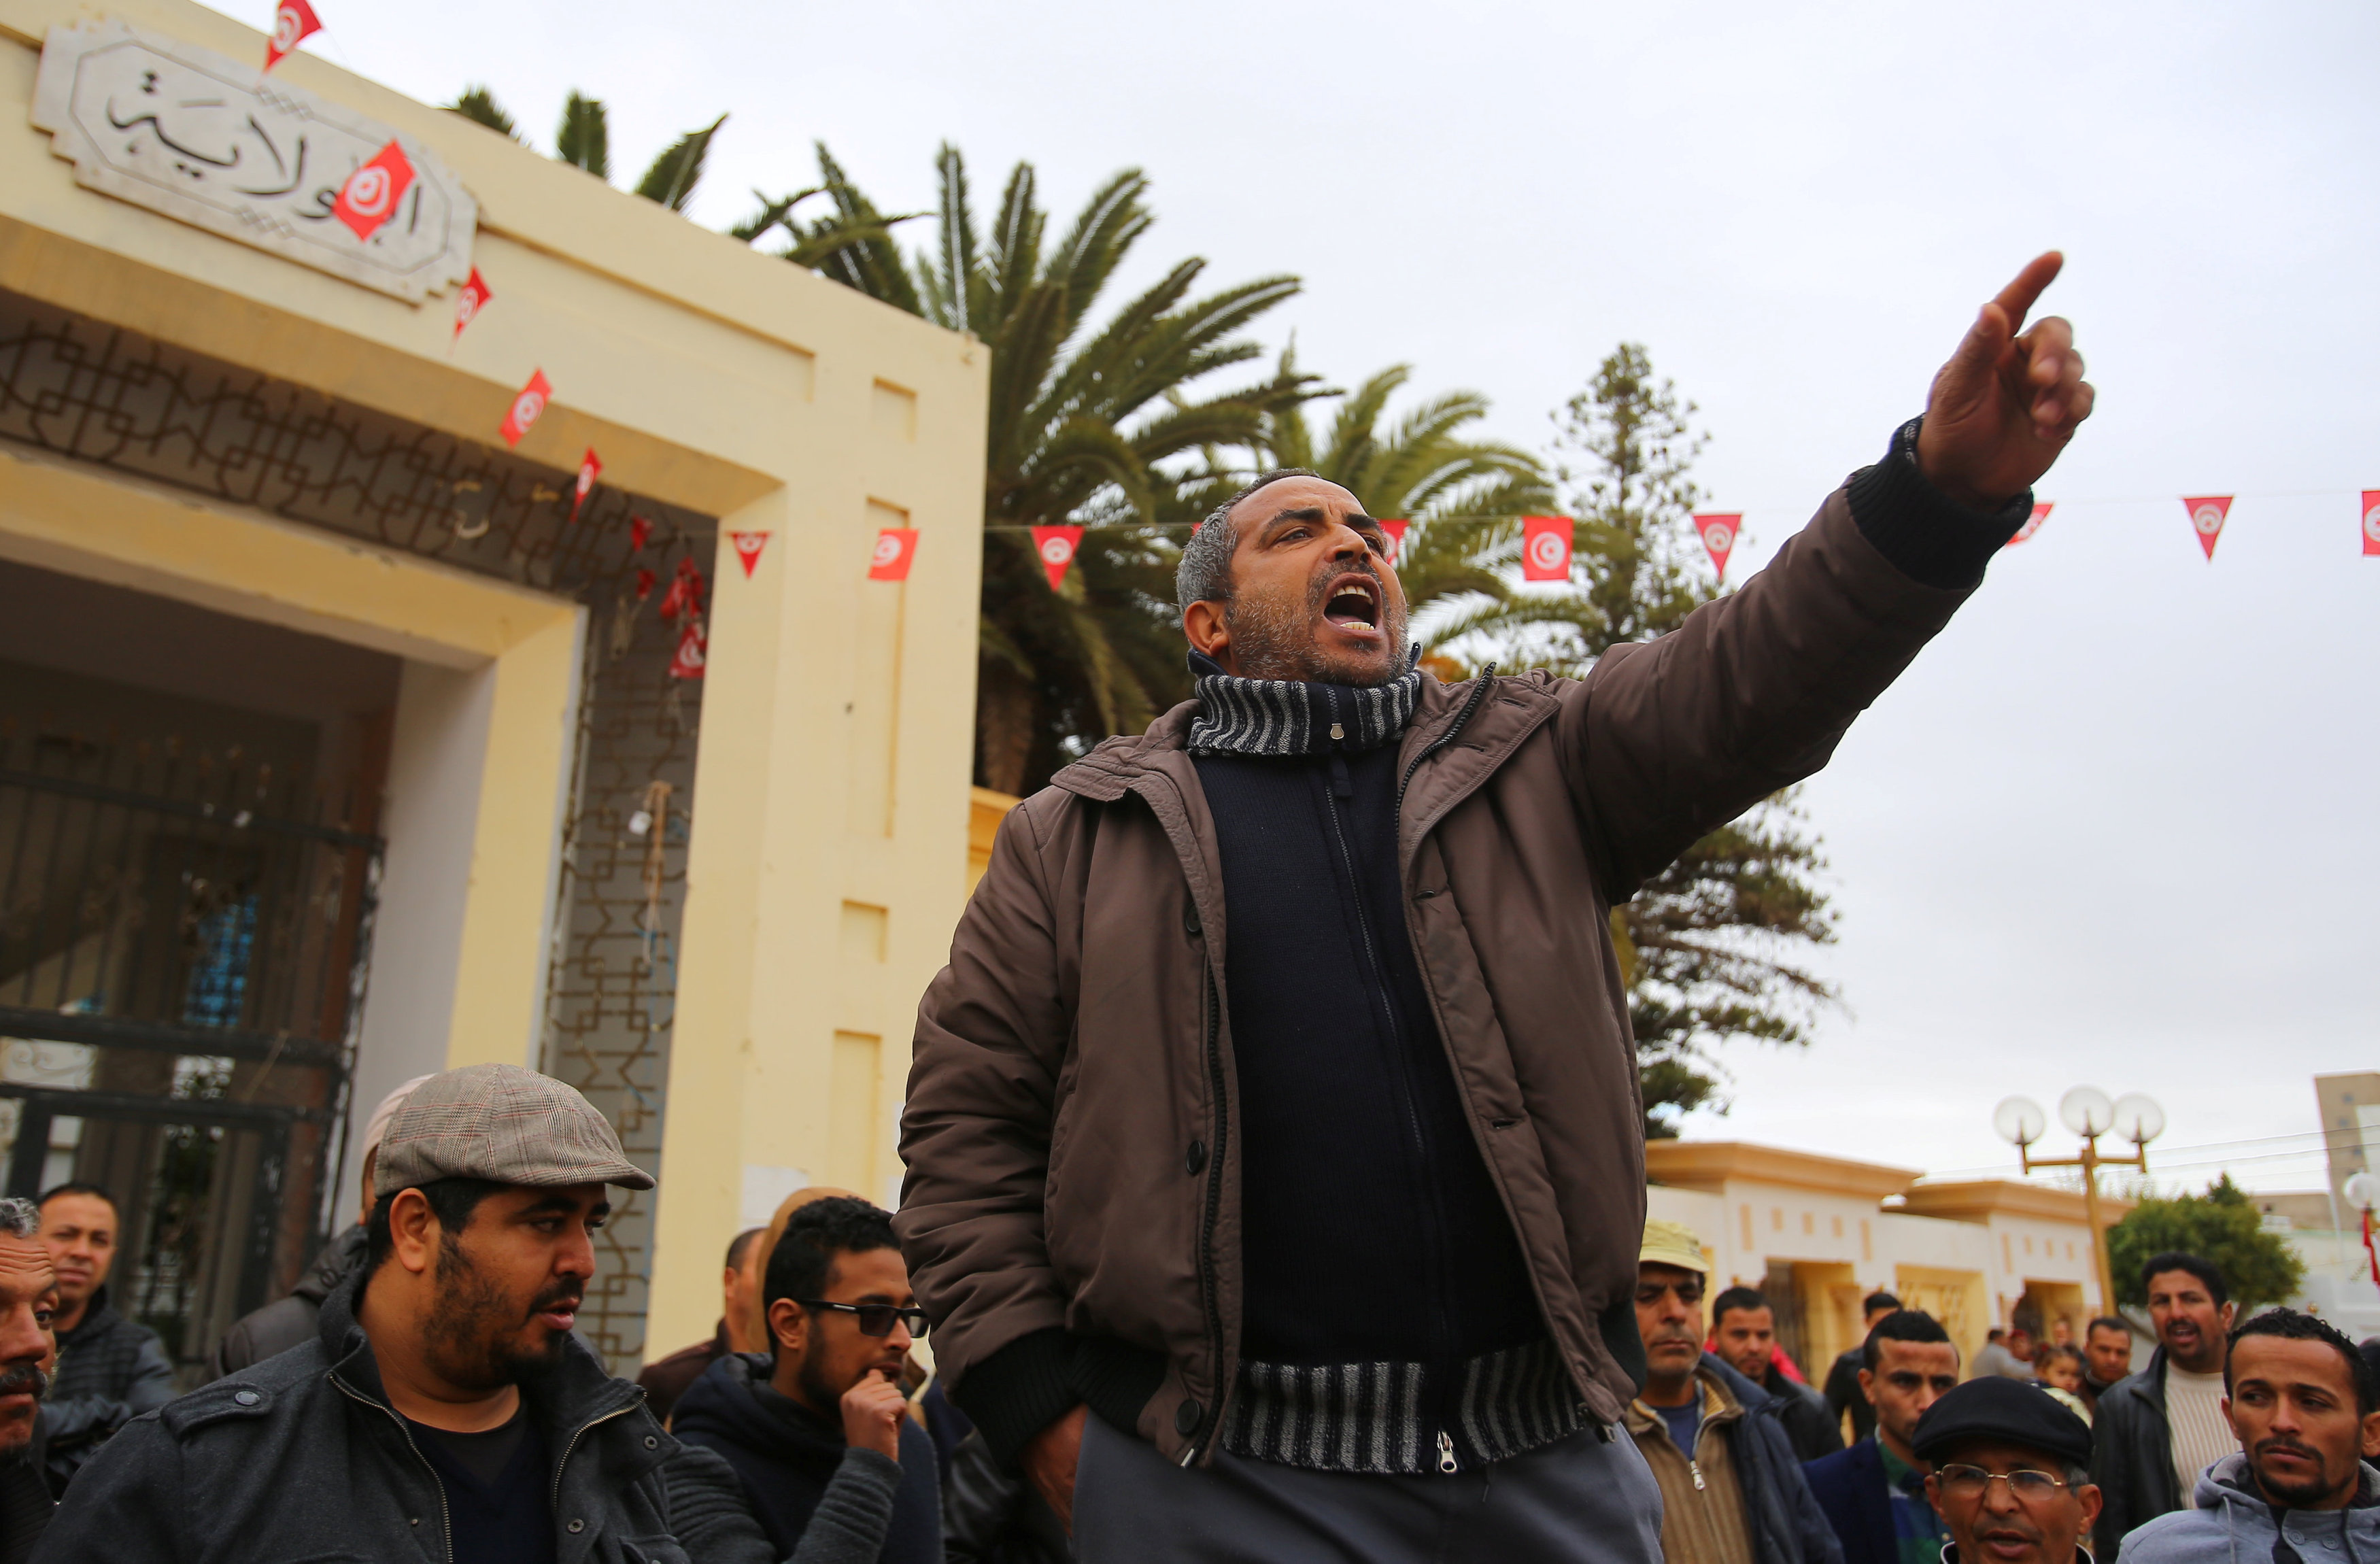 تونسيون محتجون لتردى الأوضاع فى بلادههم